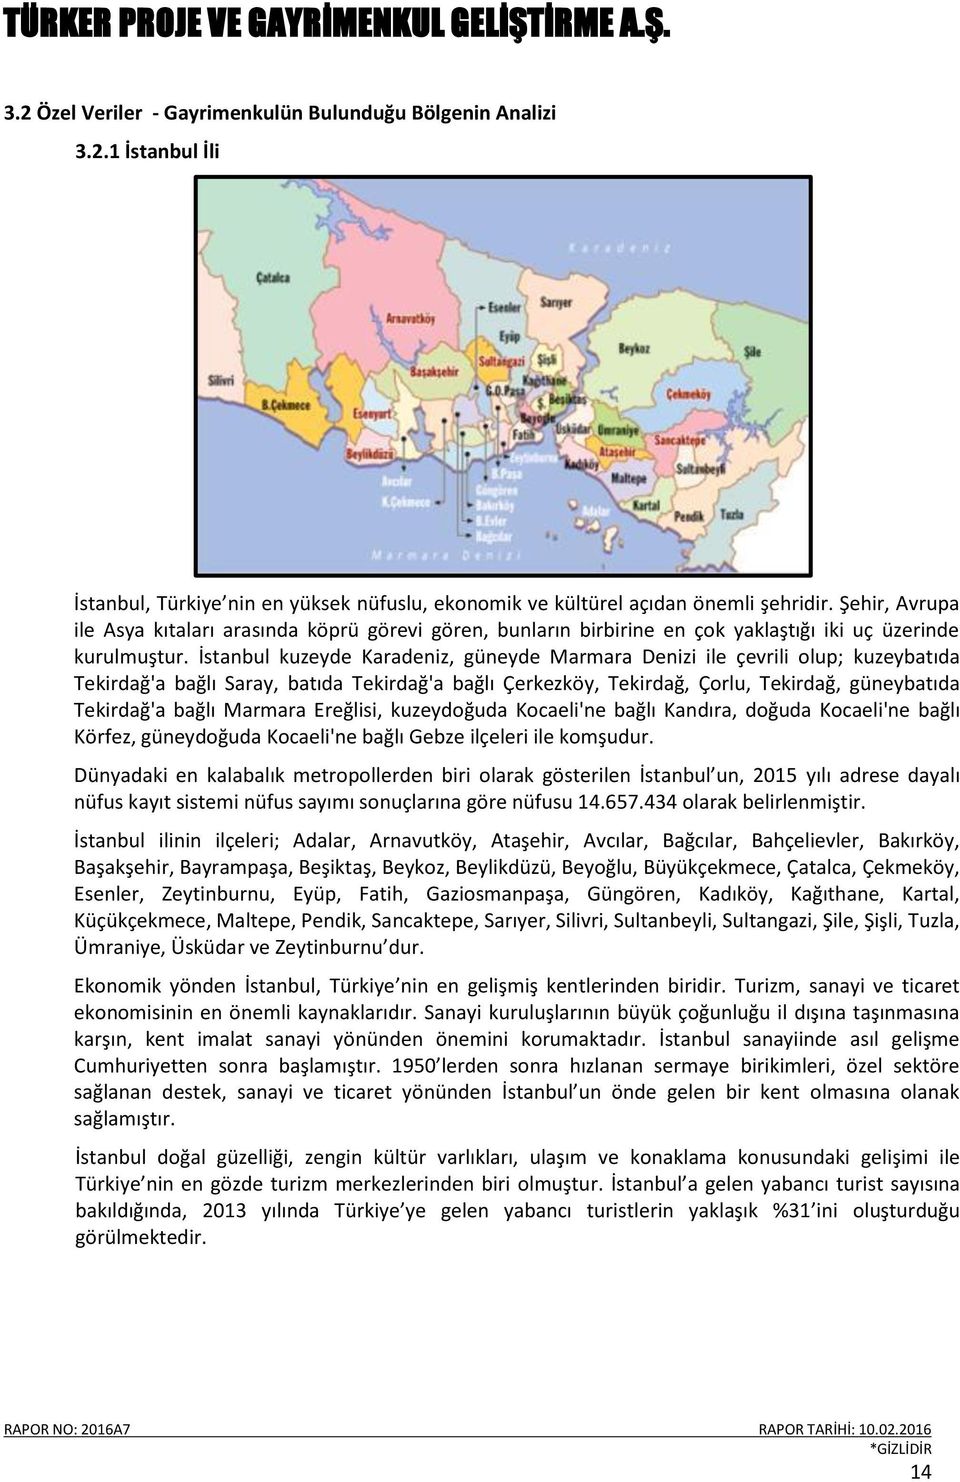 İstanbul kuzeyde Karadeniz, güneyde Marmara Denizi ile çevrili olup; kuzeybatıda Tekirdağ'a bağlı Saray, batıda Tekirdağ'a bağlı Çerkezköy, Tekirdağ, Çorlu, Tekirdağ, güneybatıda Tekirdağ'a bağlı